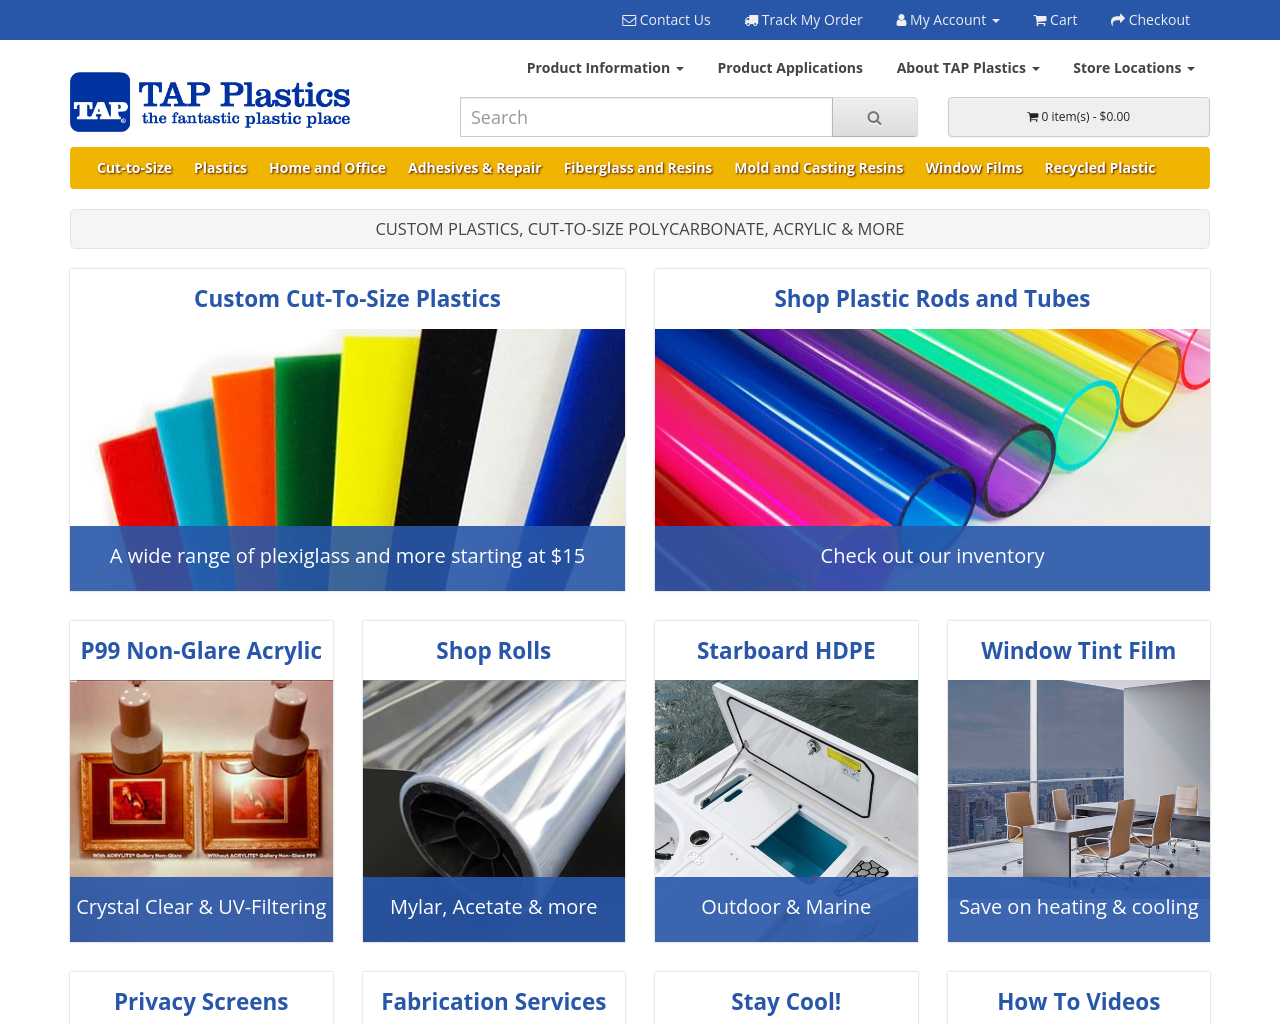 tapplastics.com